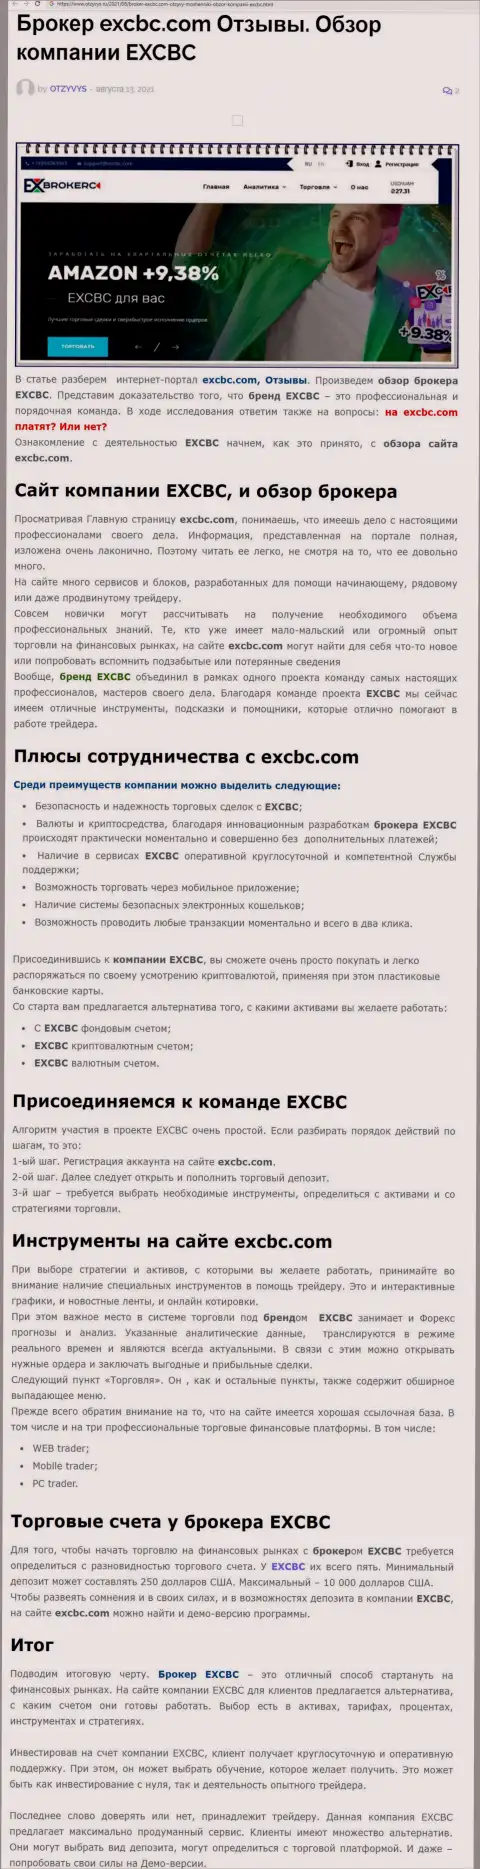 Обзорный материал об Forex компании EXCBC на сайте Отзывс Ру